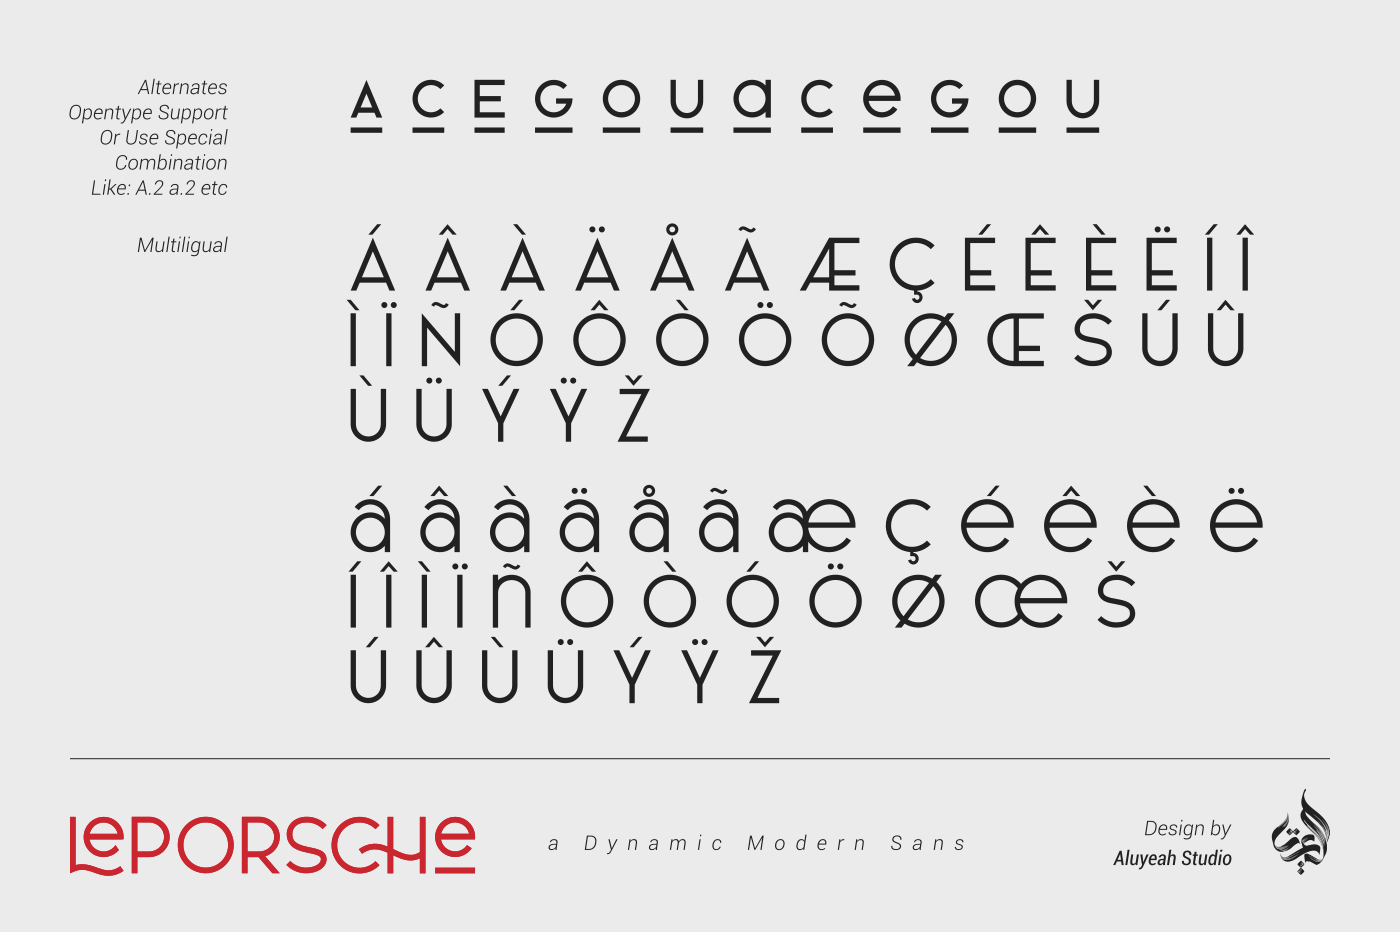 LePORSCHE dynamic modern font